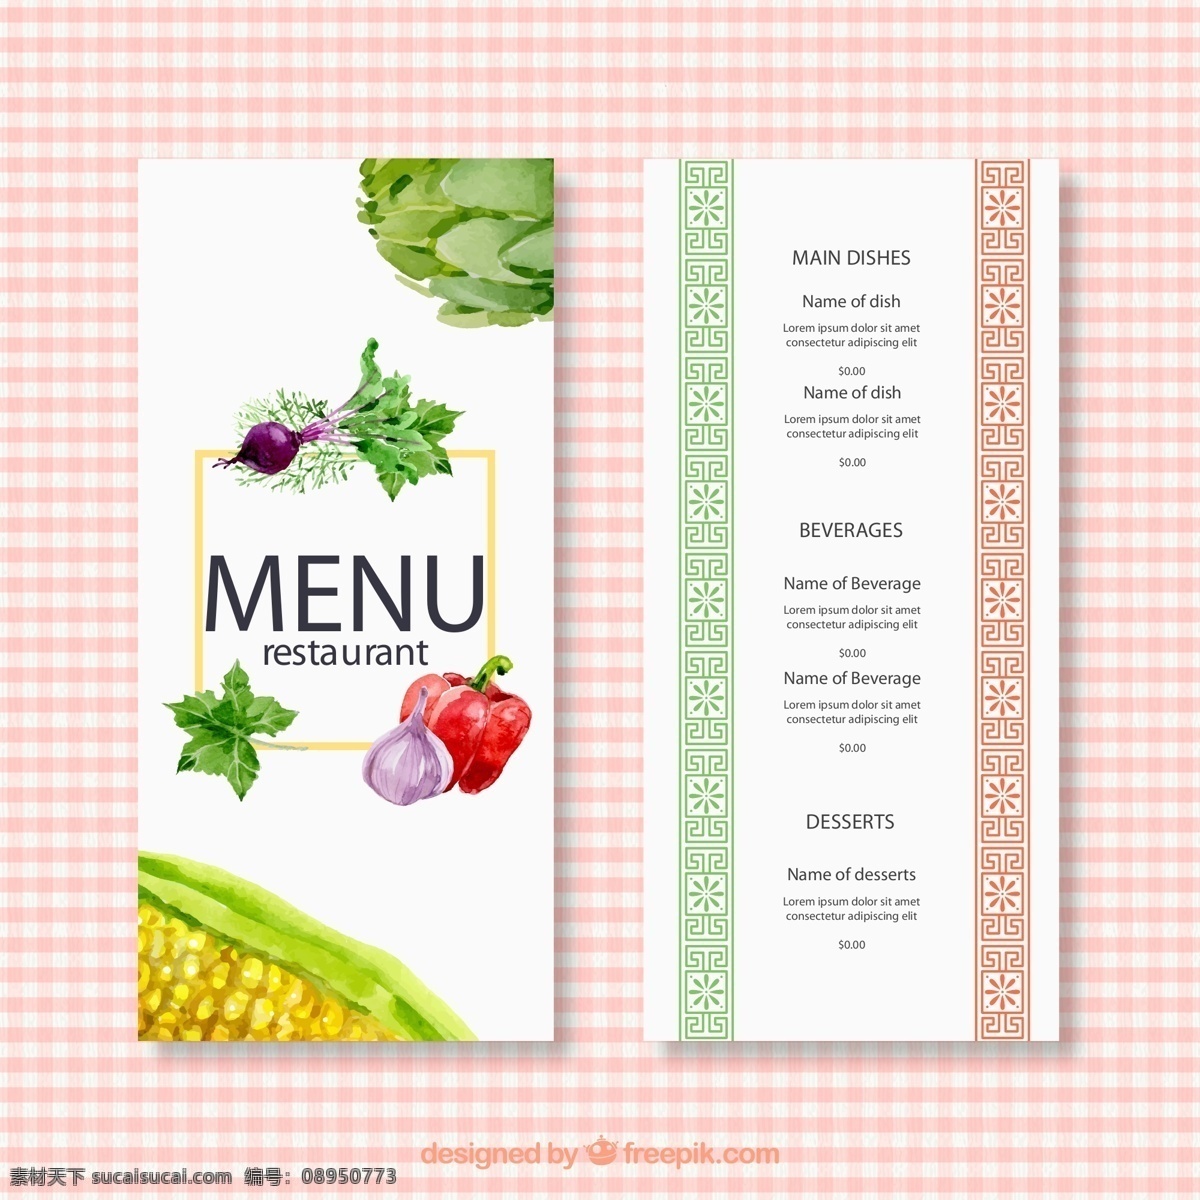 简约 果蔬 菜单 模板 菜谱设计 创意菜单 菜单模板 菜单图下载 矢量素材 平面广告 菜单素材 英文菜单 果蔬菜单 简约菜单